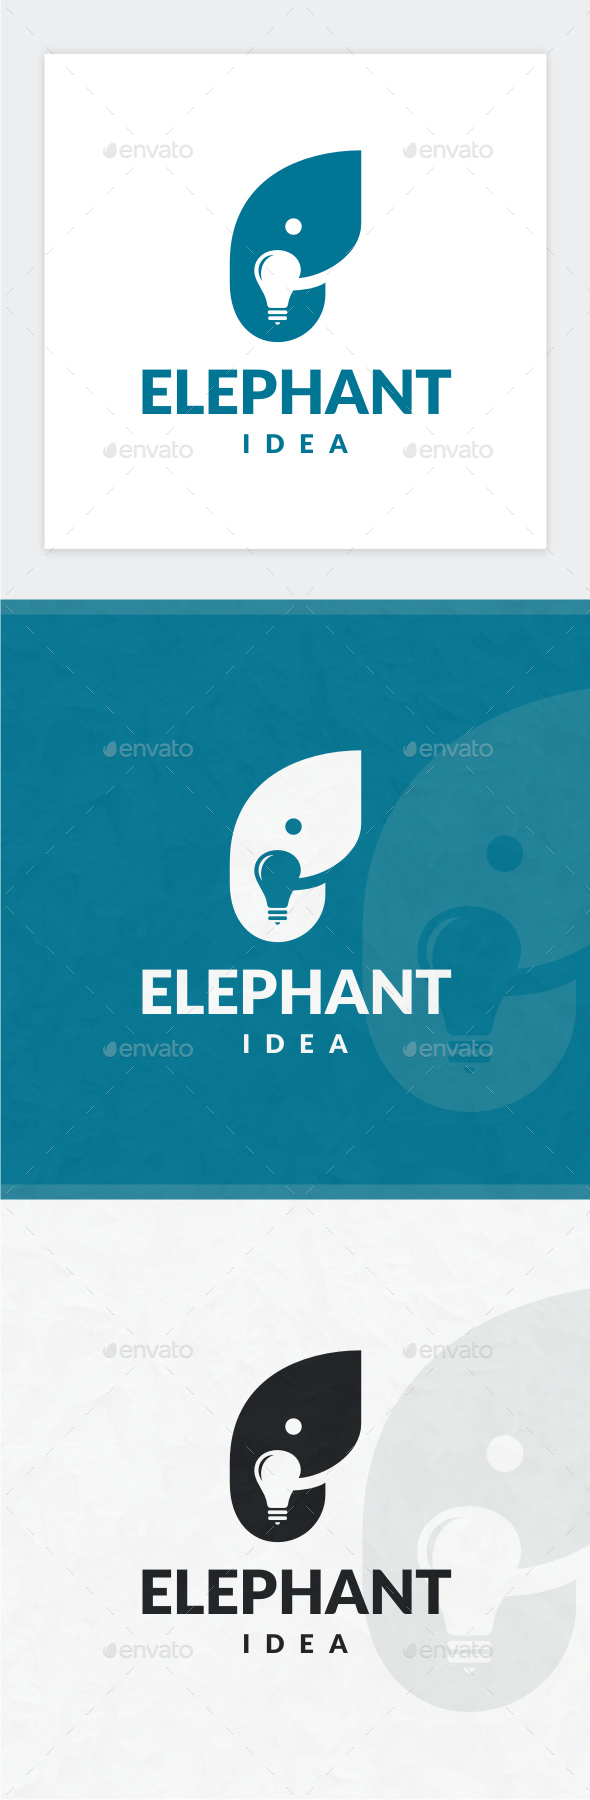 Elephant Idea Logo